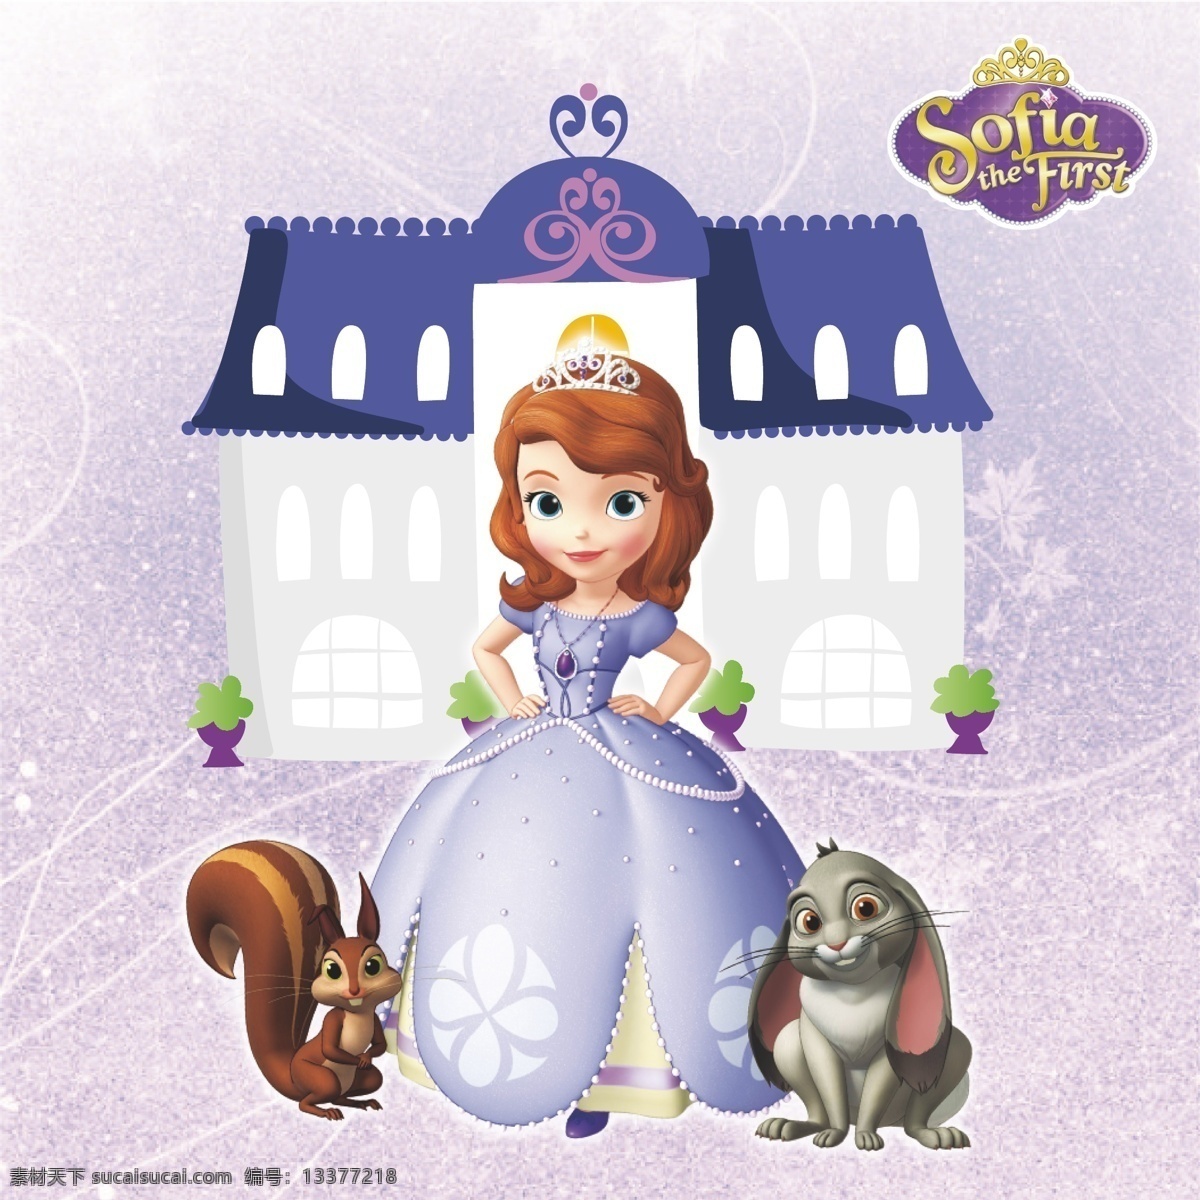 索菲亚 公主 系 类 索菲亚公主 城堡 索菲亚标识 紫色背景 松鼠 小狗 索菲亚系列 动漫动画 动漫人物